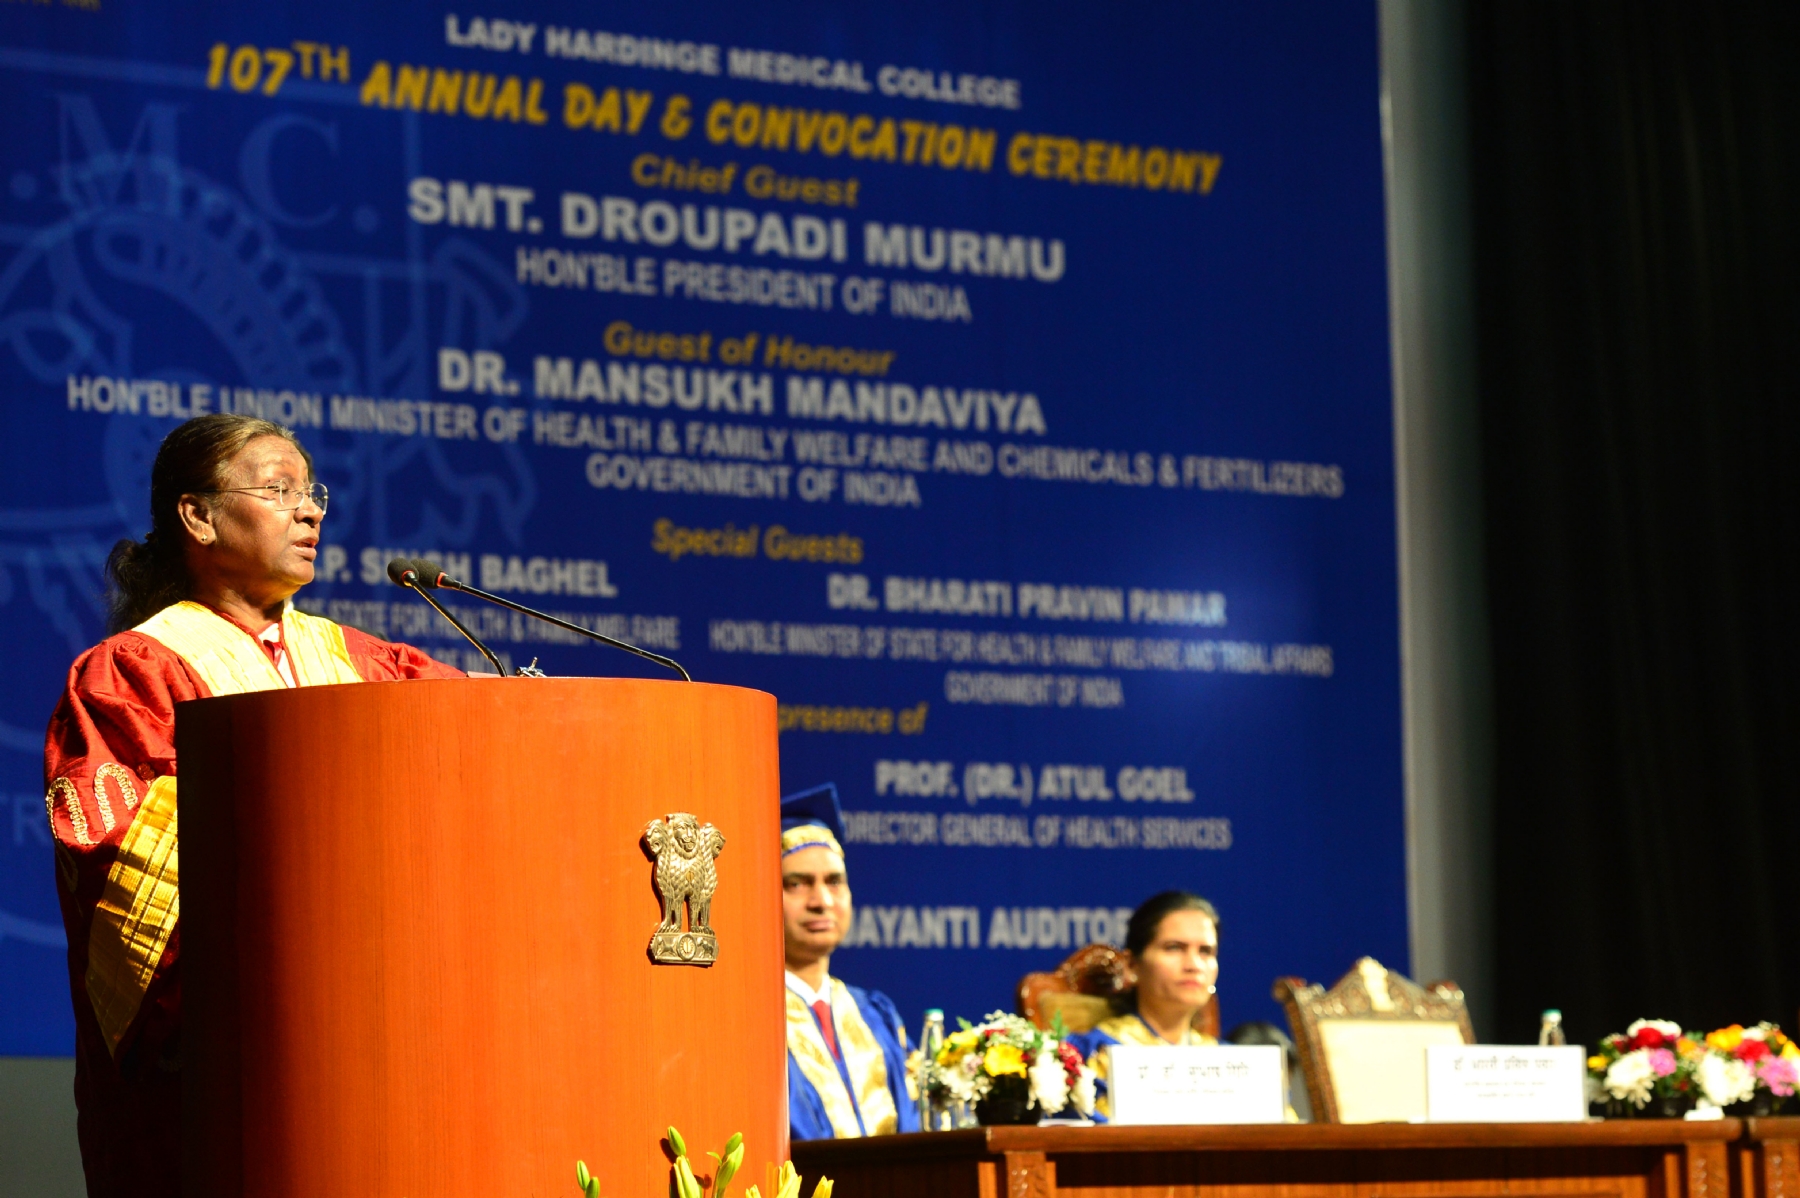 राष्ट्रपति श्रीमती द्रौपदी मुर्मू ने नई दिल्ली में लेडी हार्डिंग मेडिकल कॉलेज (एलएचएमसी) के 107वें वार्षिक दिवस और दीक्षांत समारोह में भाग लिया